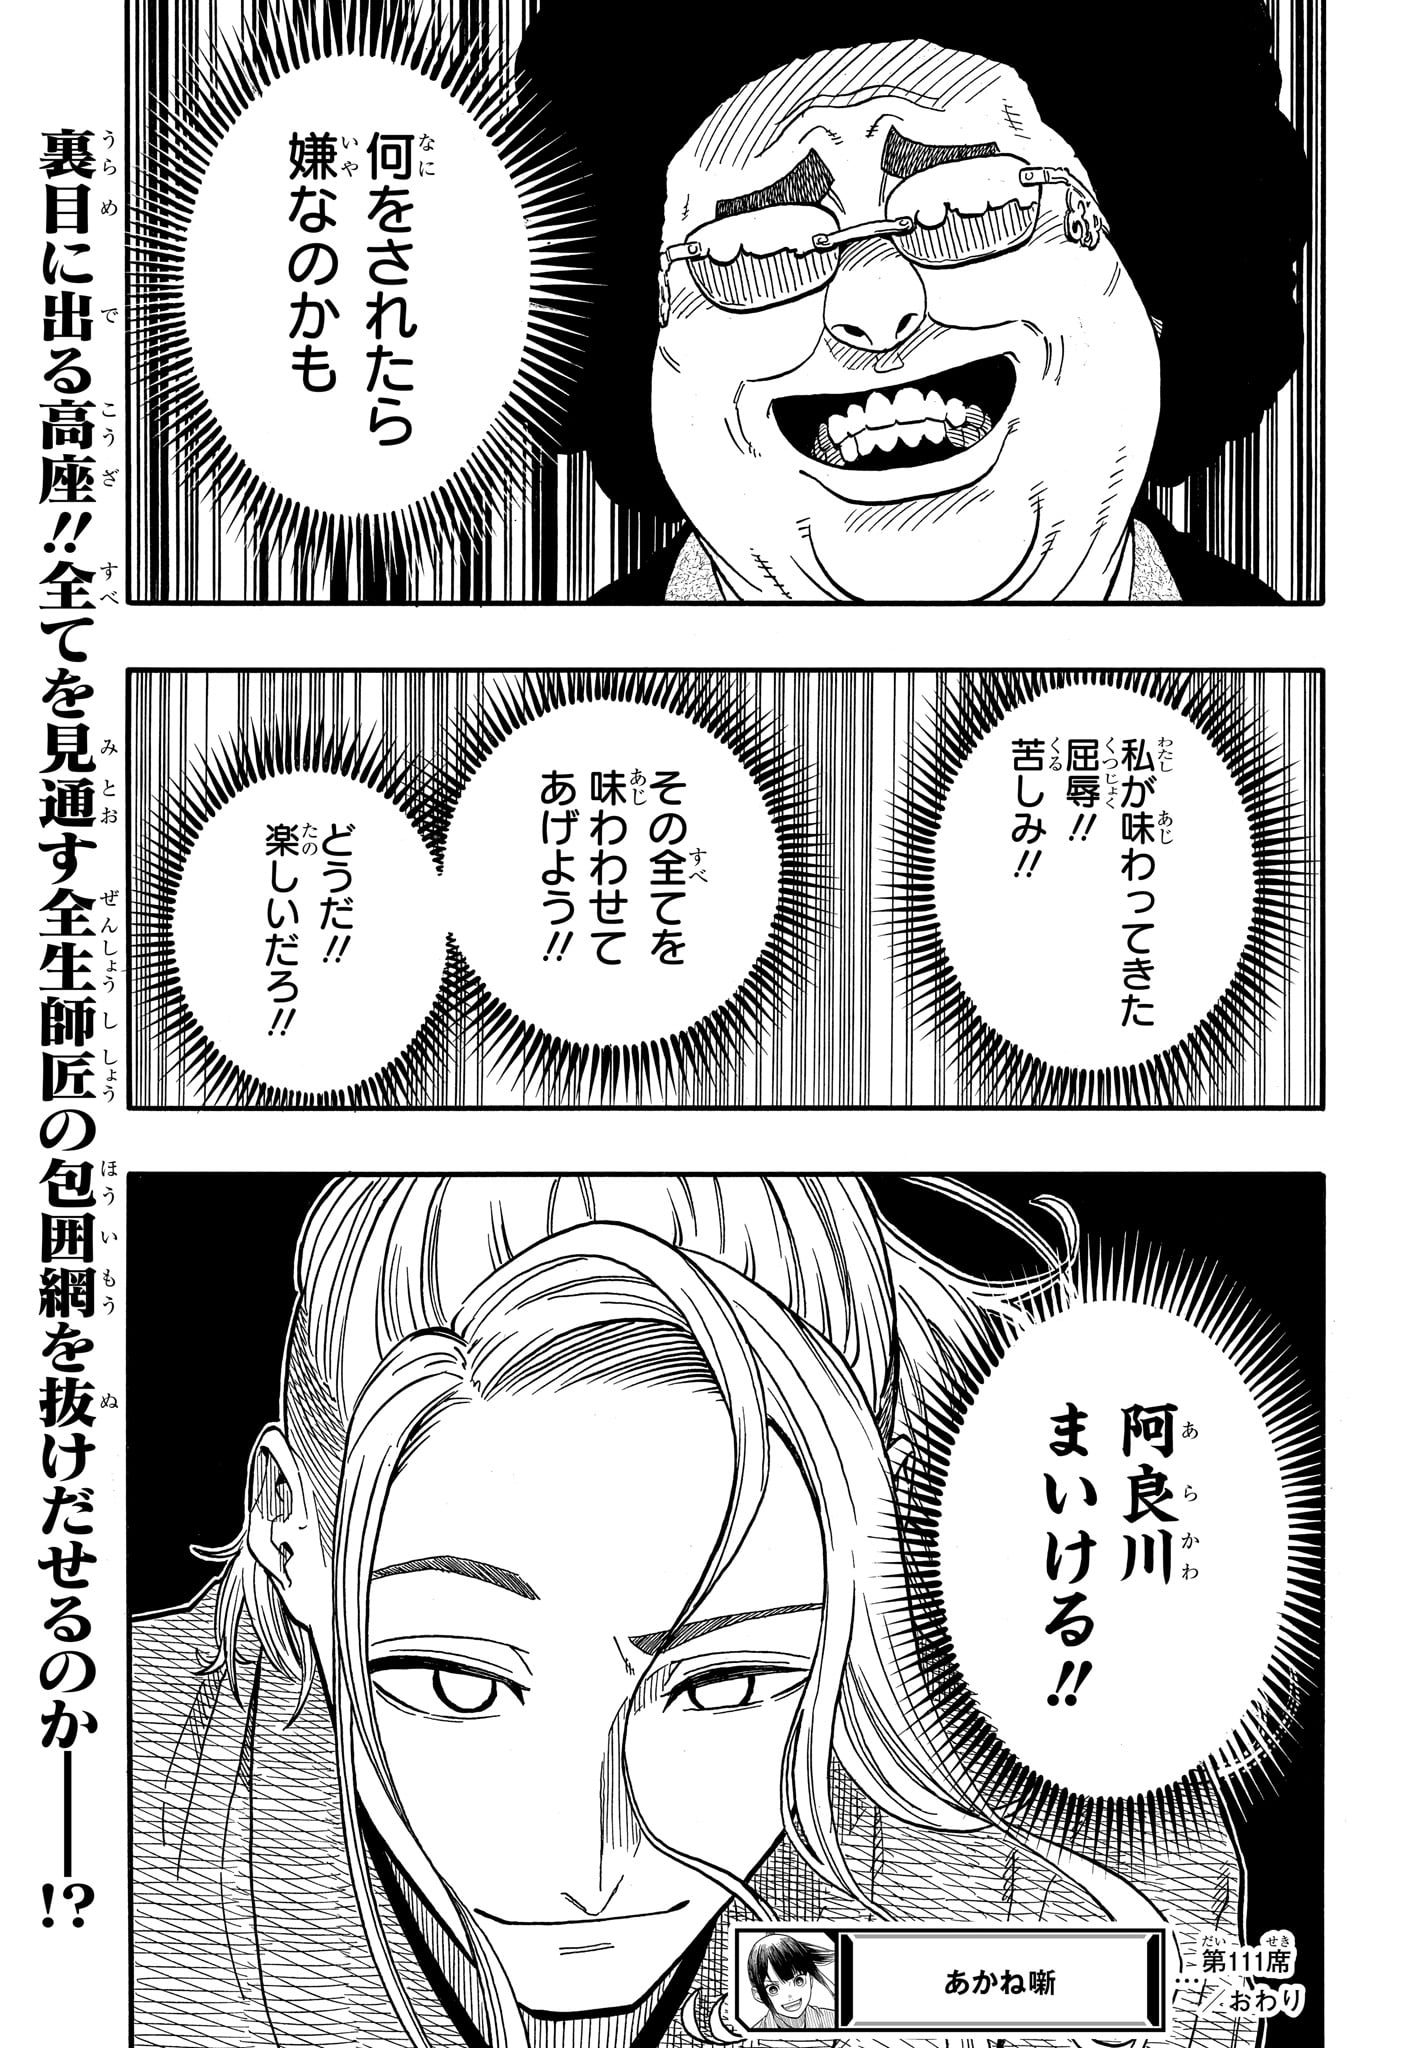 Akane-Banashi - Chapter 111 - Page 19